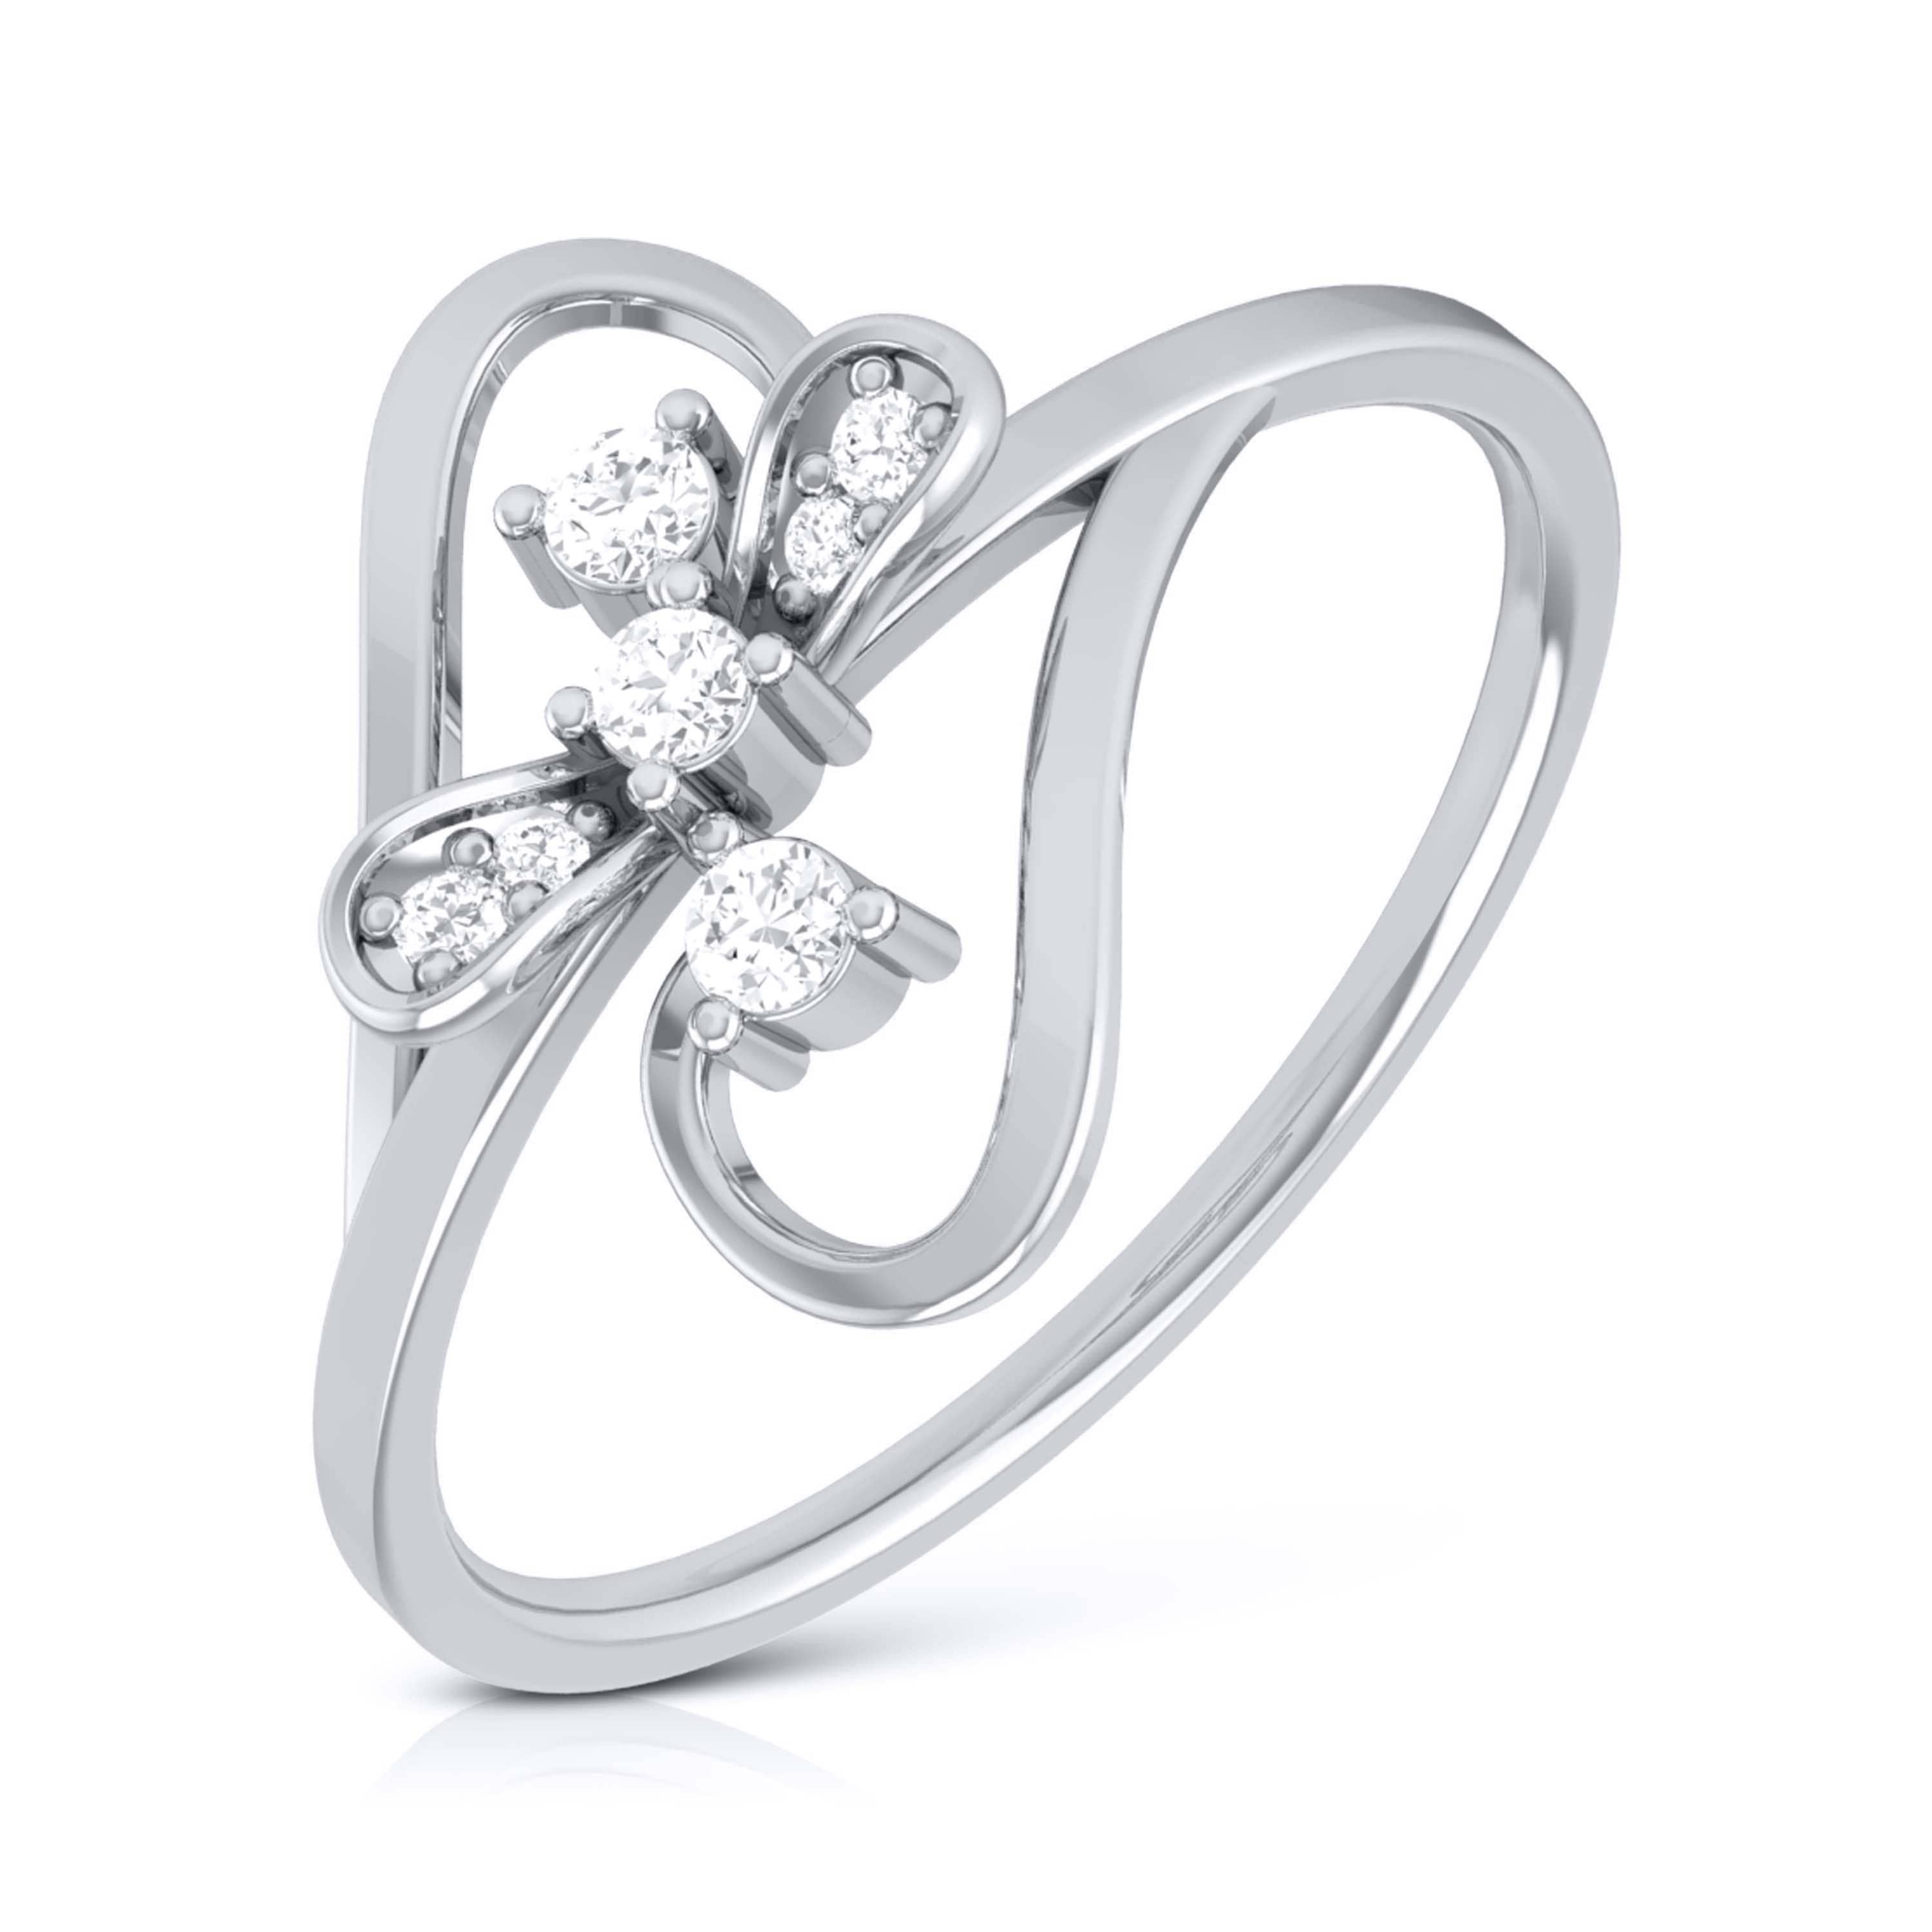 Unique 1/2 Carat Diamond Rings Design - Half Carat| Fascinating Diamonds